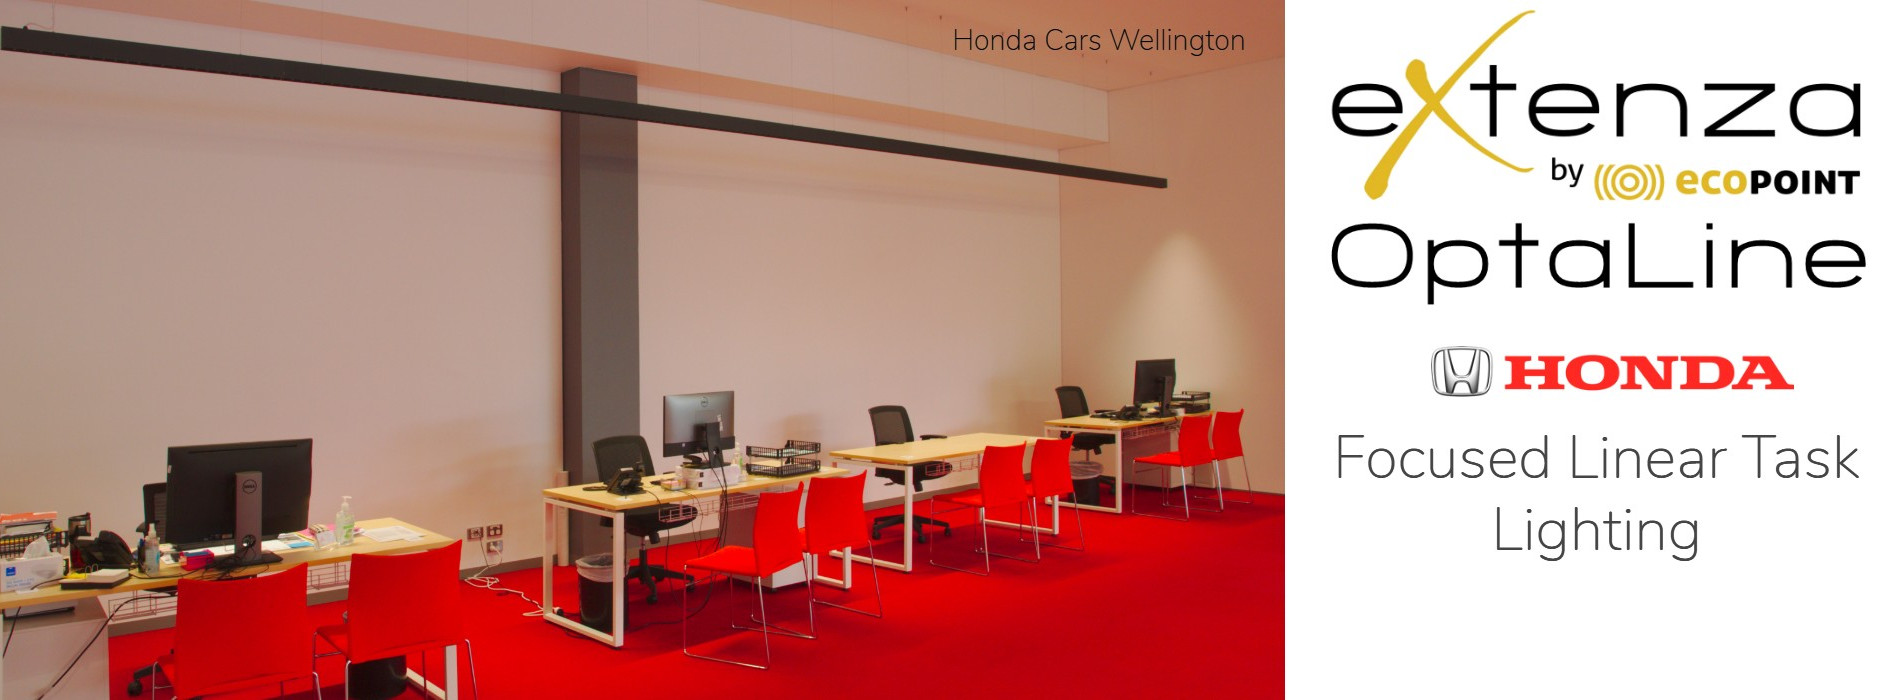 Honda Reception OptaLine Header 2